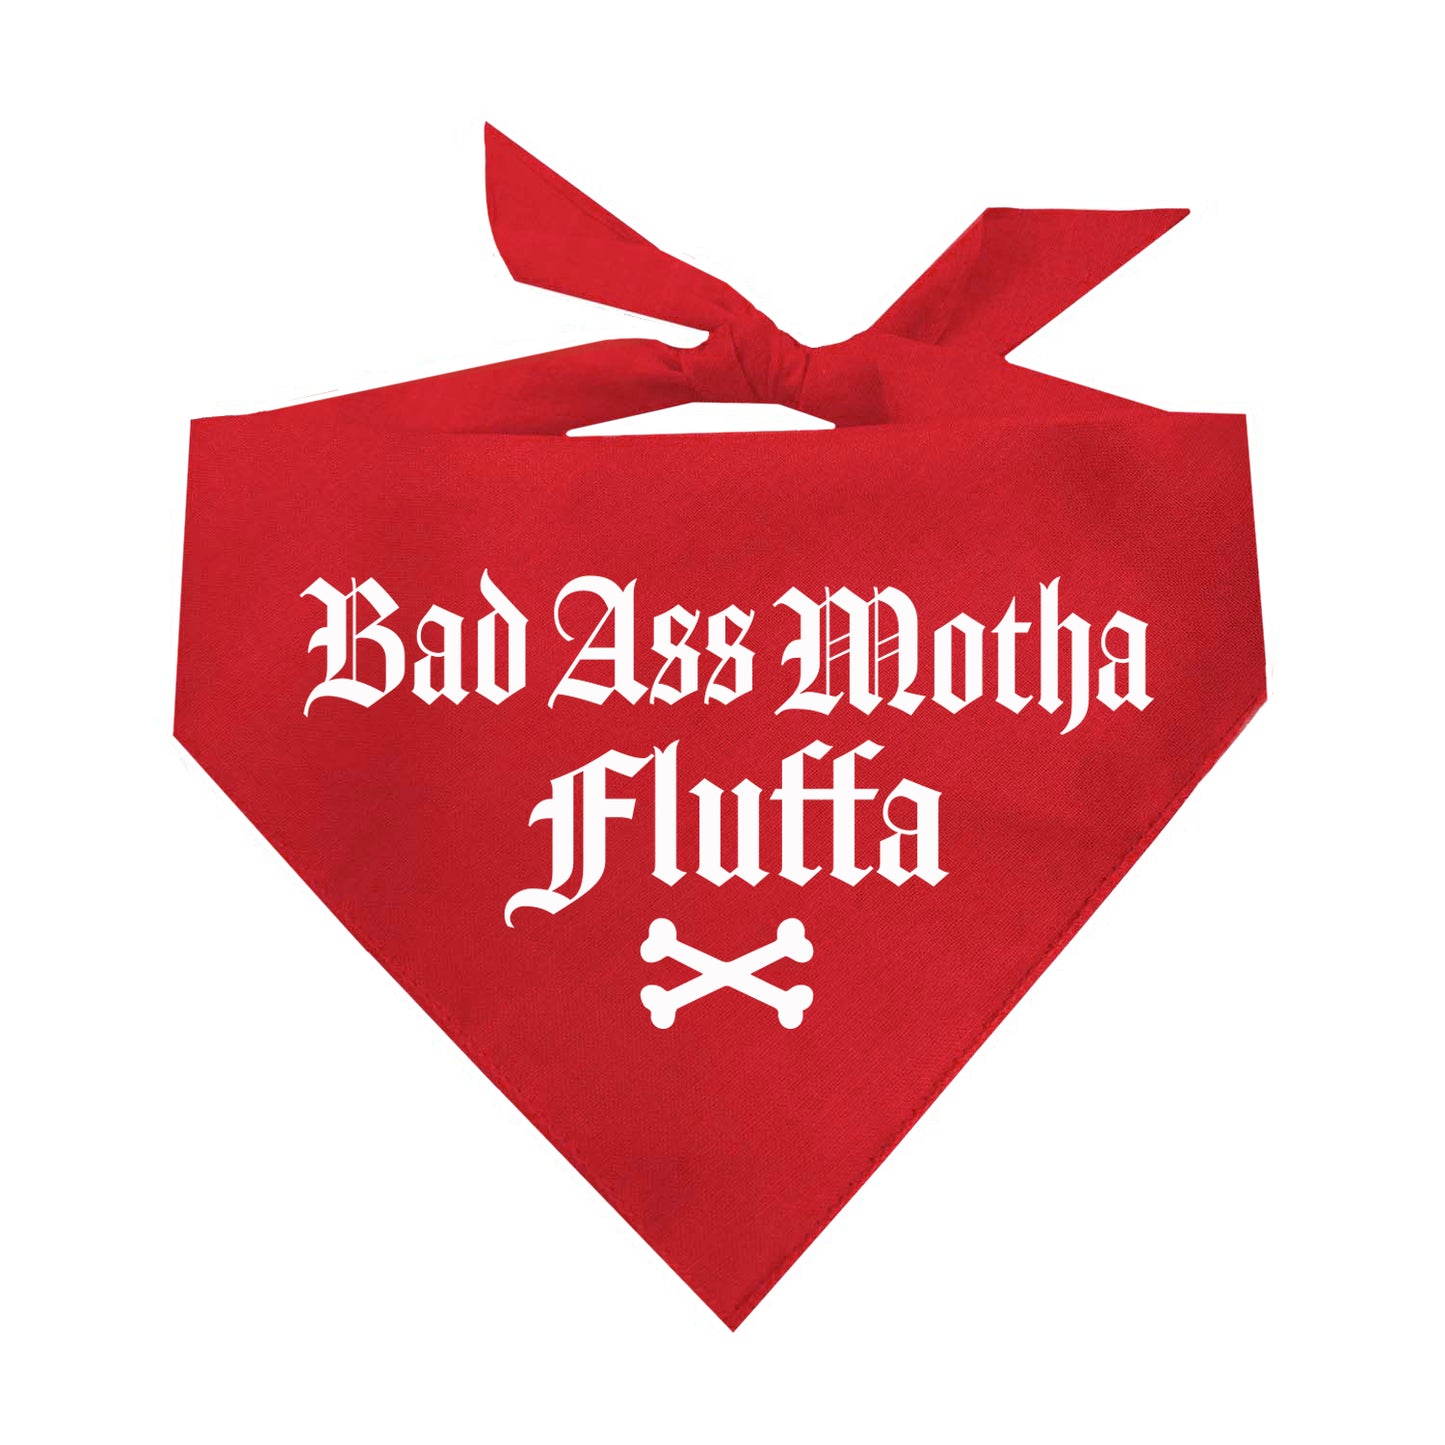 Badass Motha Fluffa Triangle Dog Bandana